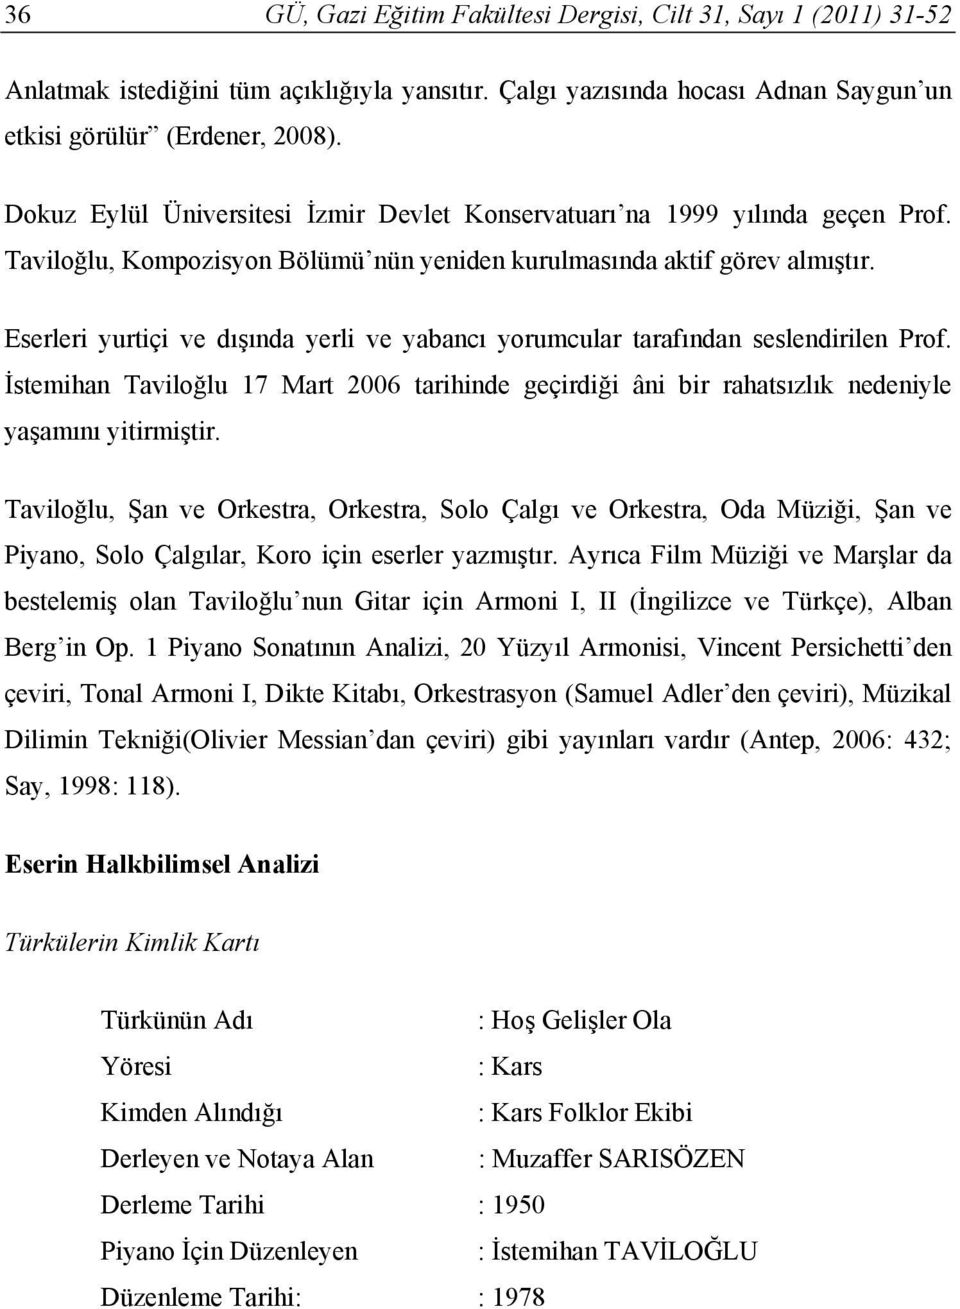 Eserleri yurtiçi ve dışında yerli ve yabancı yorumcular tarafından seslendirilen Prof. İstemihan Taviloğlu 17 Mart 2006 tarihinde geçirdiği âni bir rahatsızlık nedeniyle yaşamını yitirmiştir.